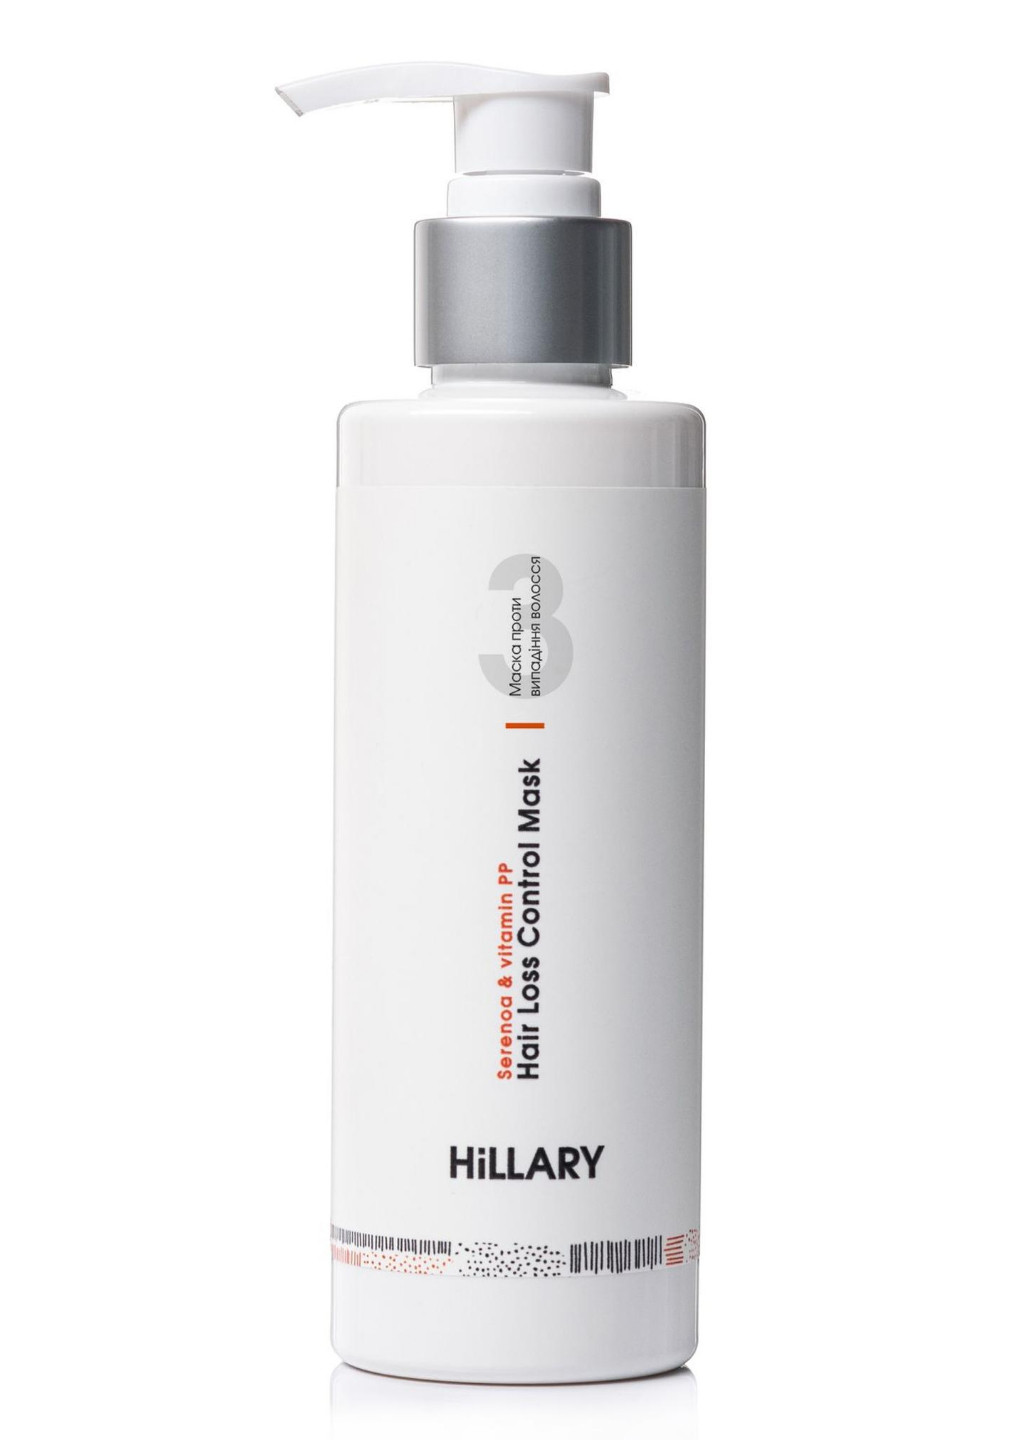 Маска проти випадіння волосся та сироватка для волосся Concentrate Serenoa + Арганова олія Hillary (256527885)